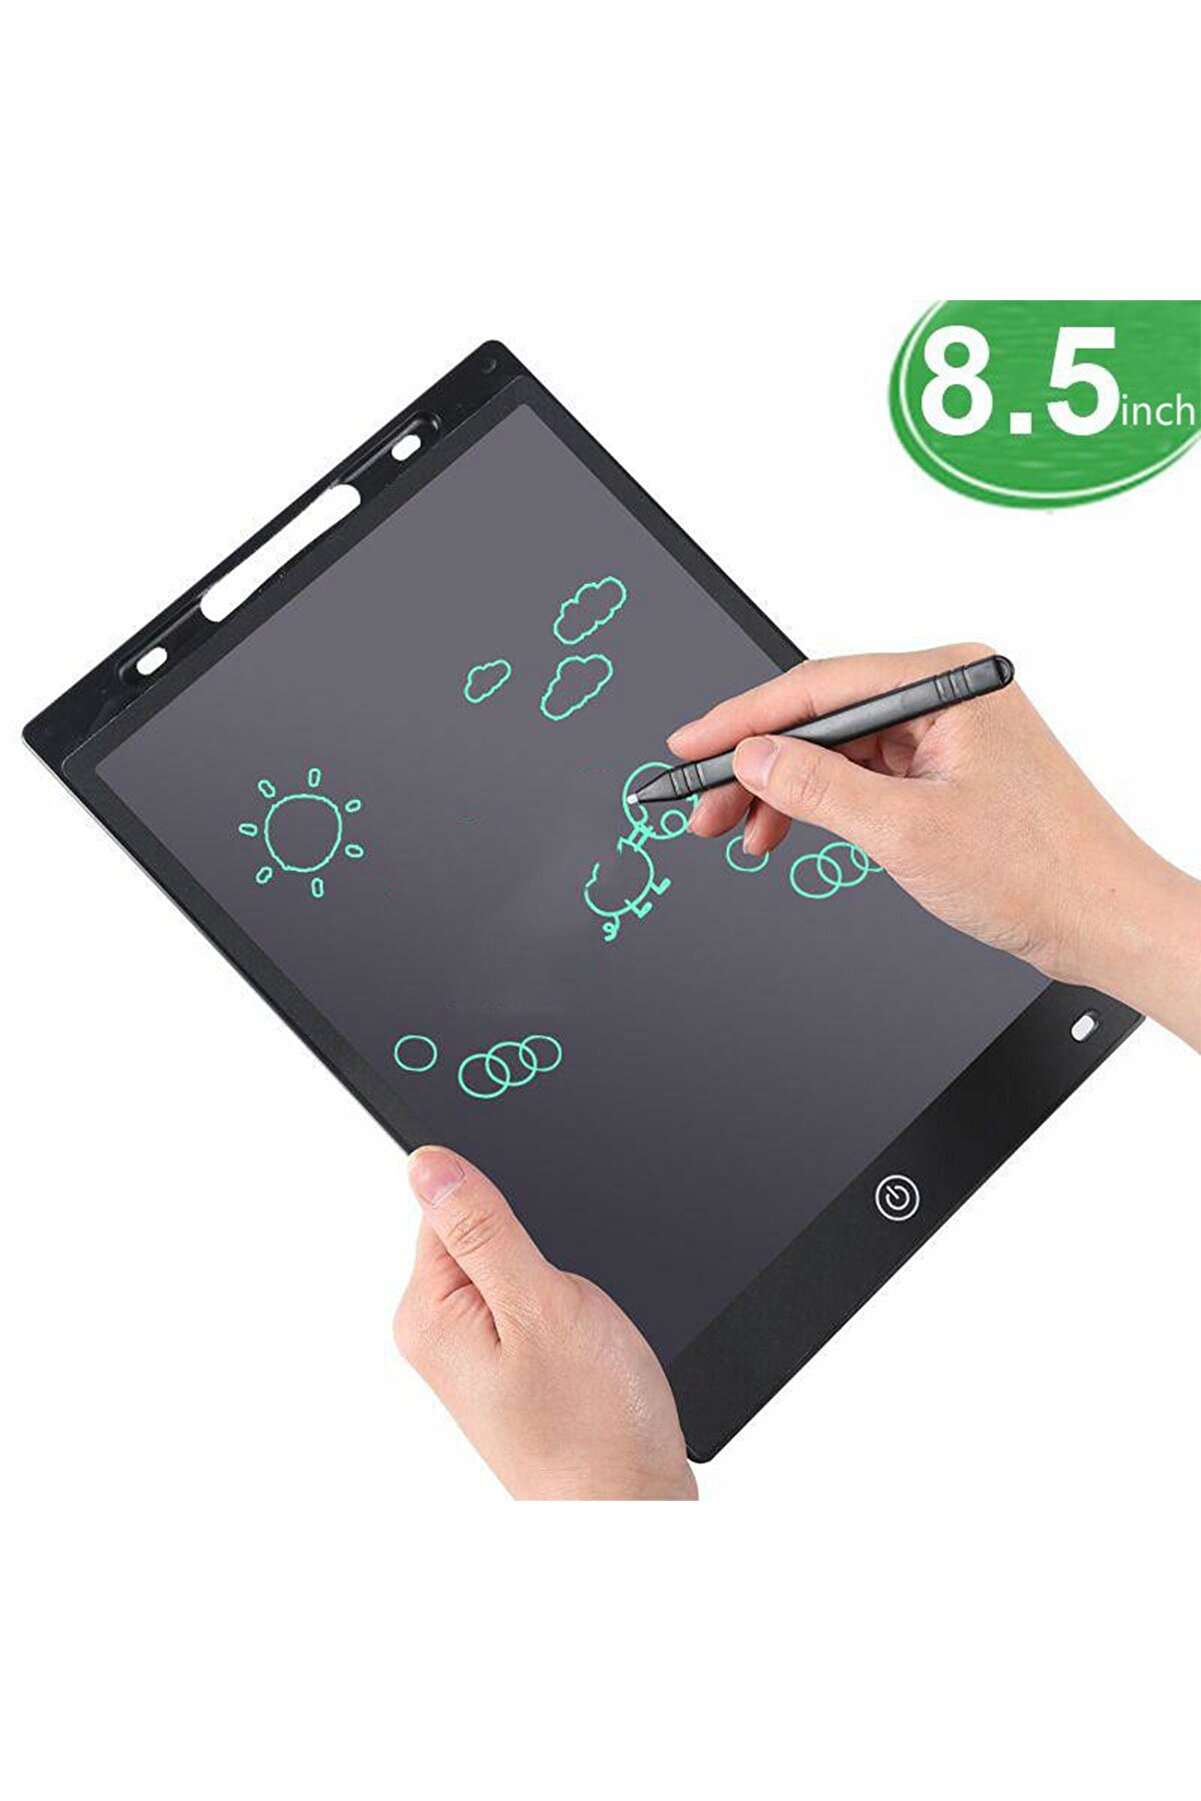 NOYİSKA Grafik Digital Çocuk Yazı Çizim Tableti Lcd 8.5 Inc Ekranlı Bilgisayar Kalemli